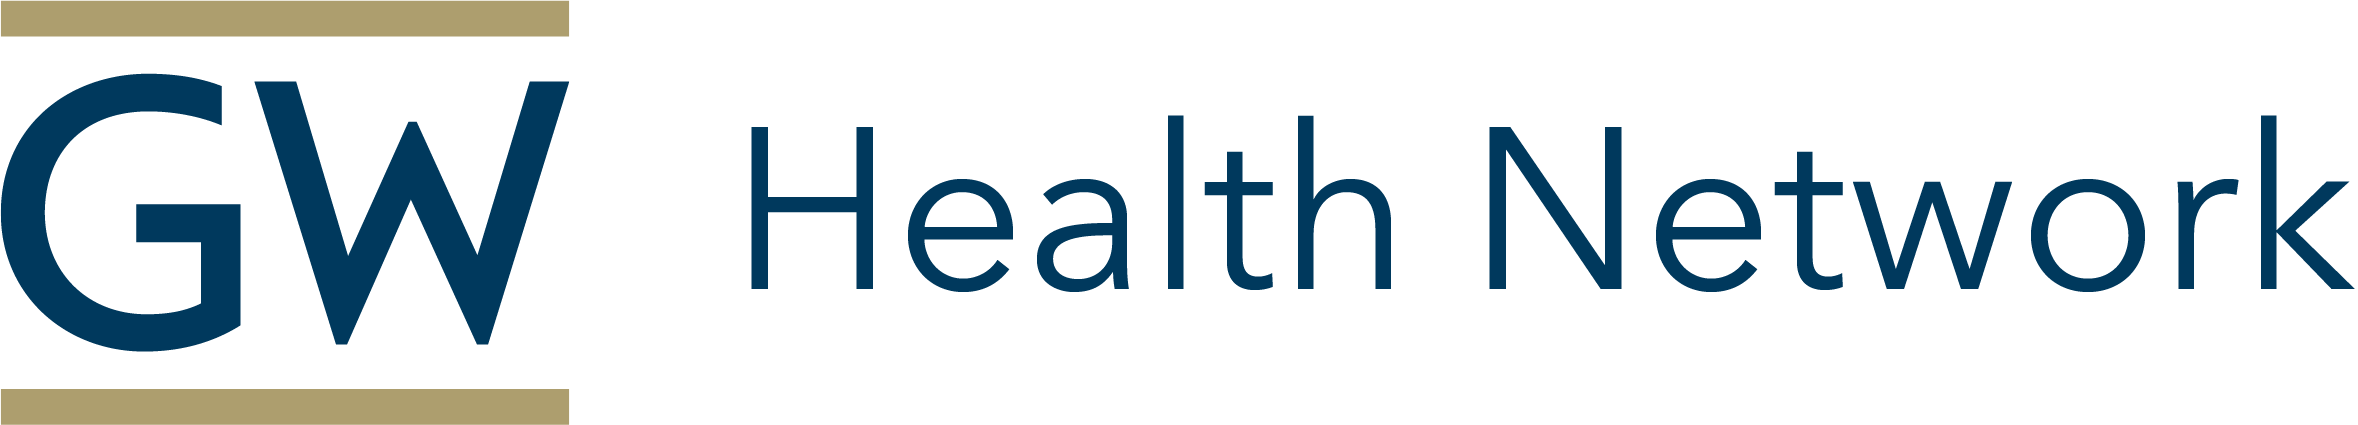 GW Health Network Logo